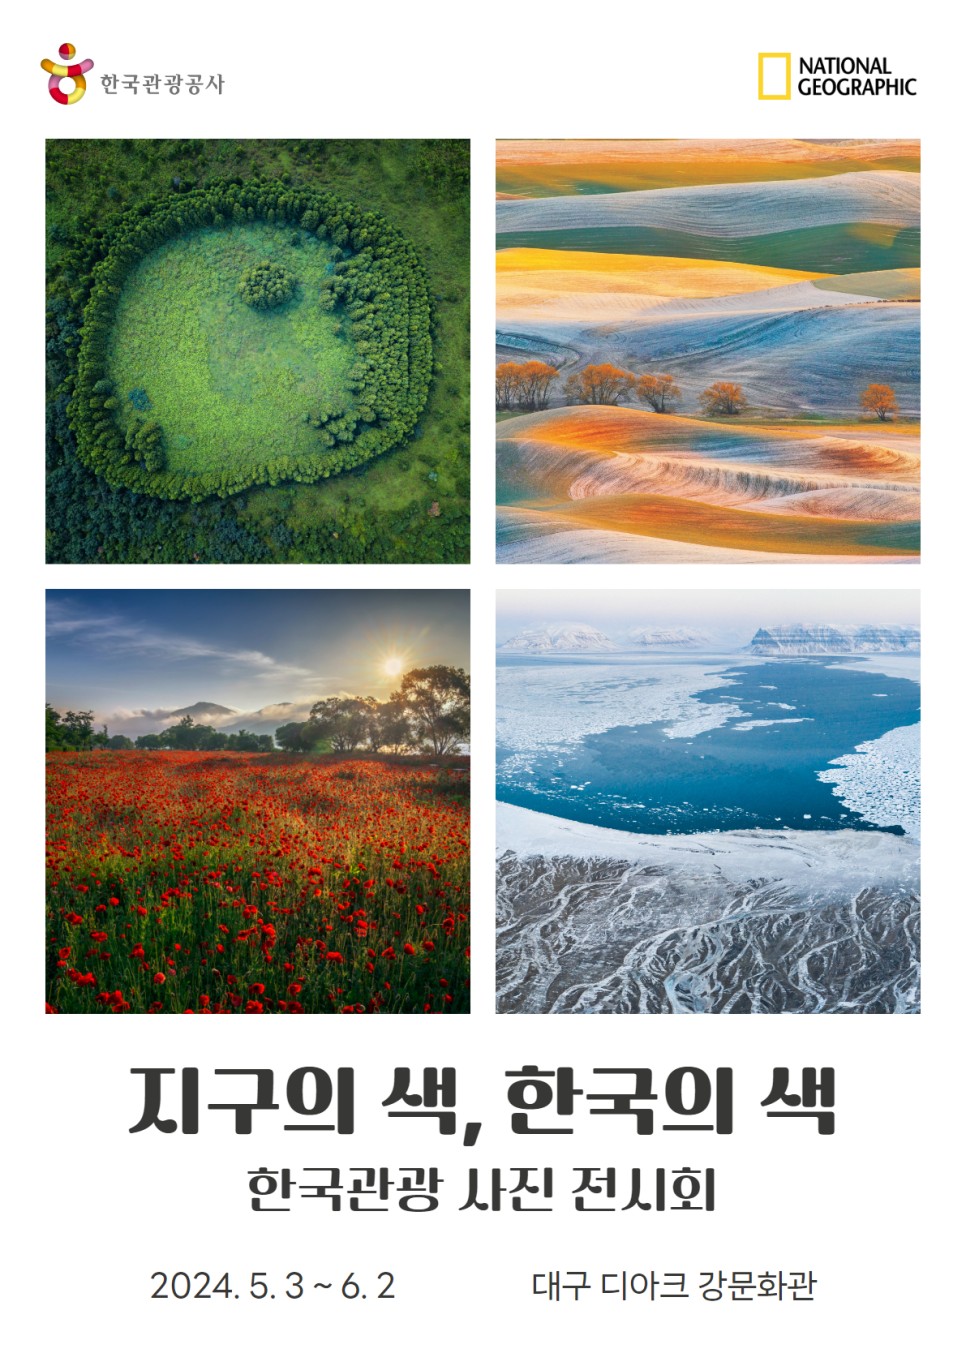 내셔널지오그래픽 협업 한국관광사진전 개최